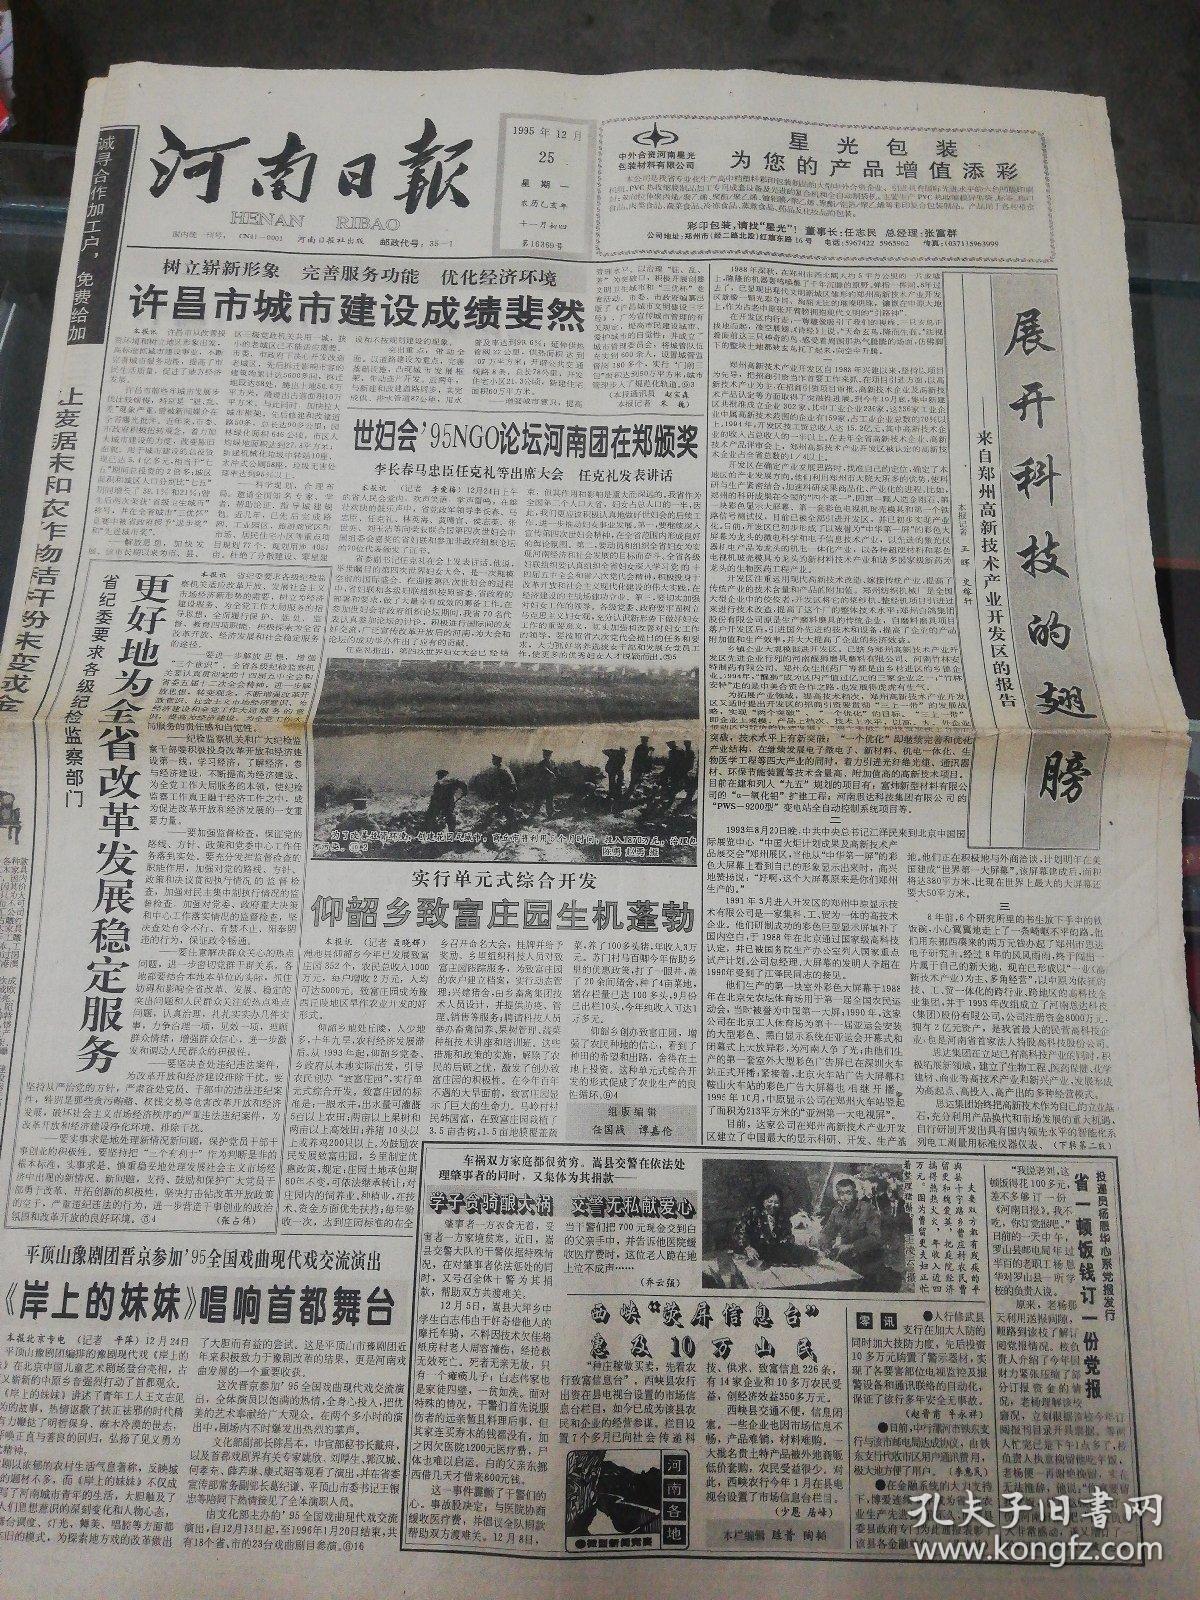 【报纸生日报】河南日报 1995年12月25日【许